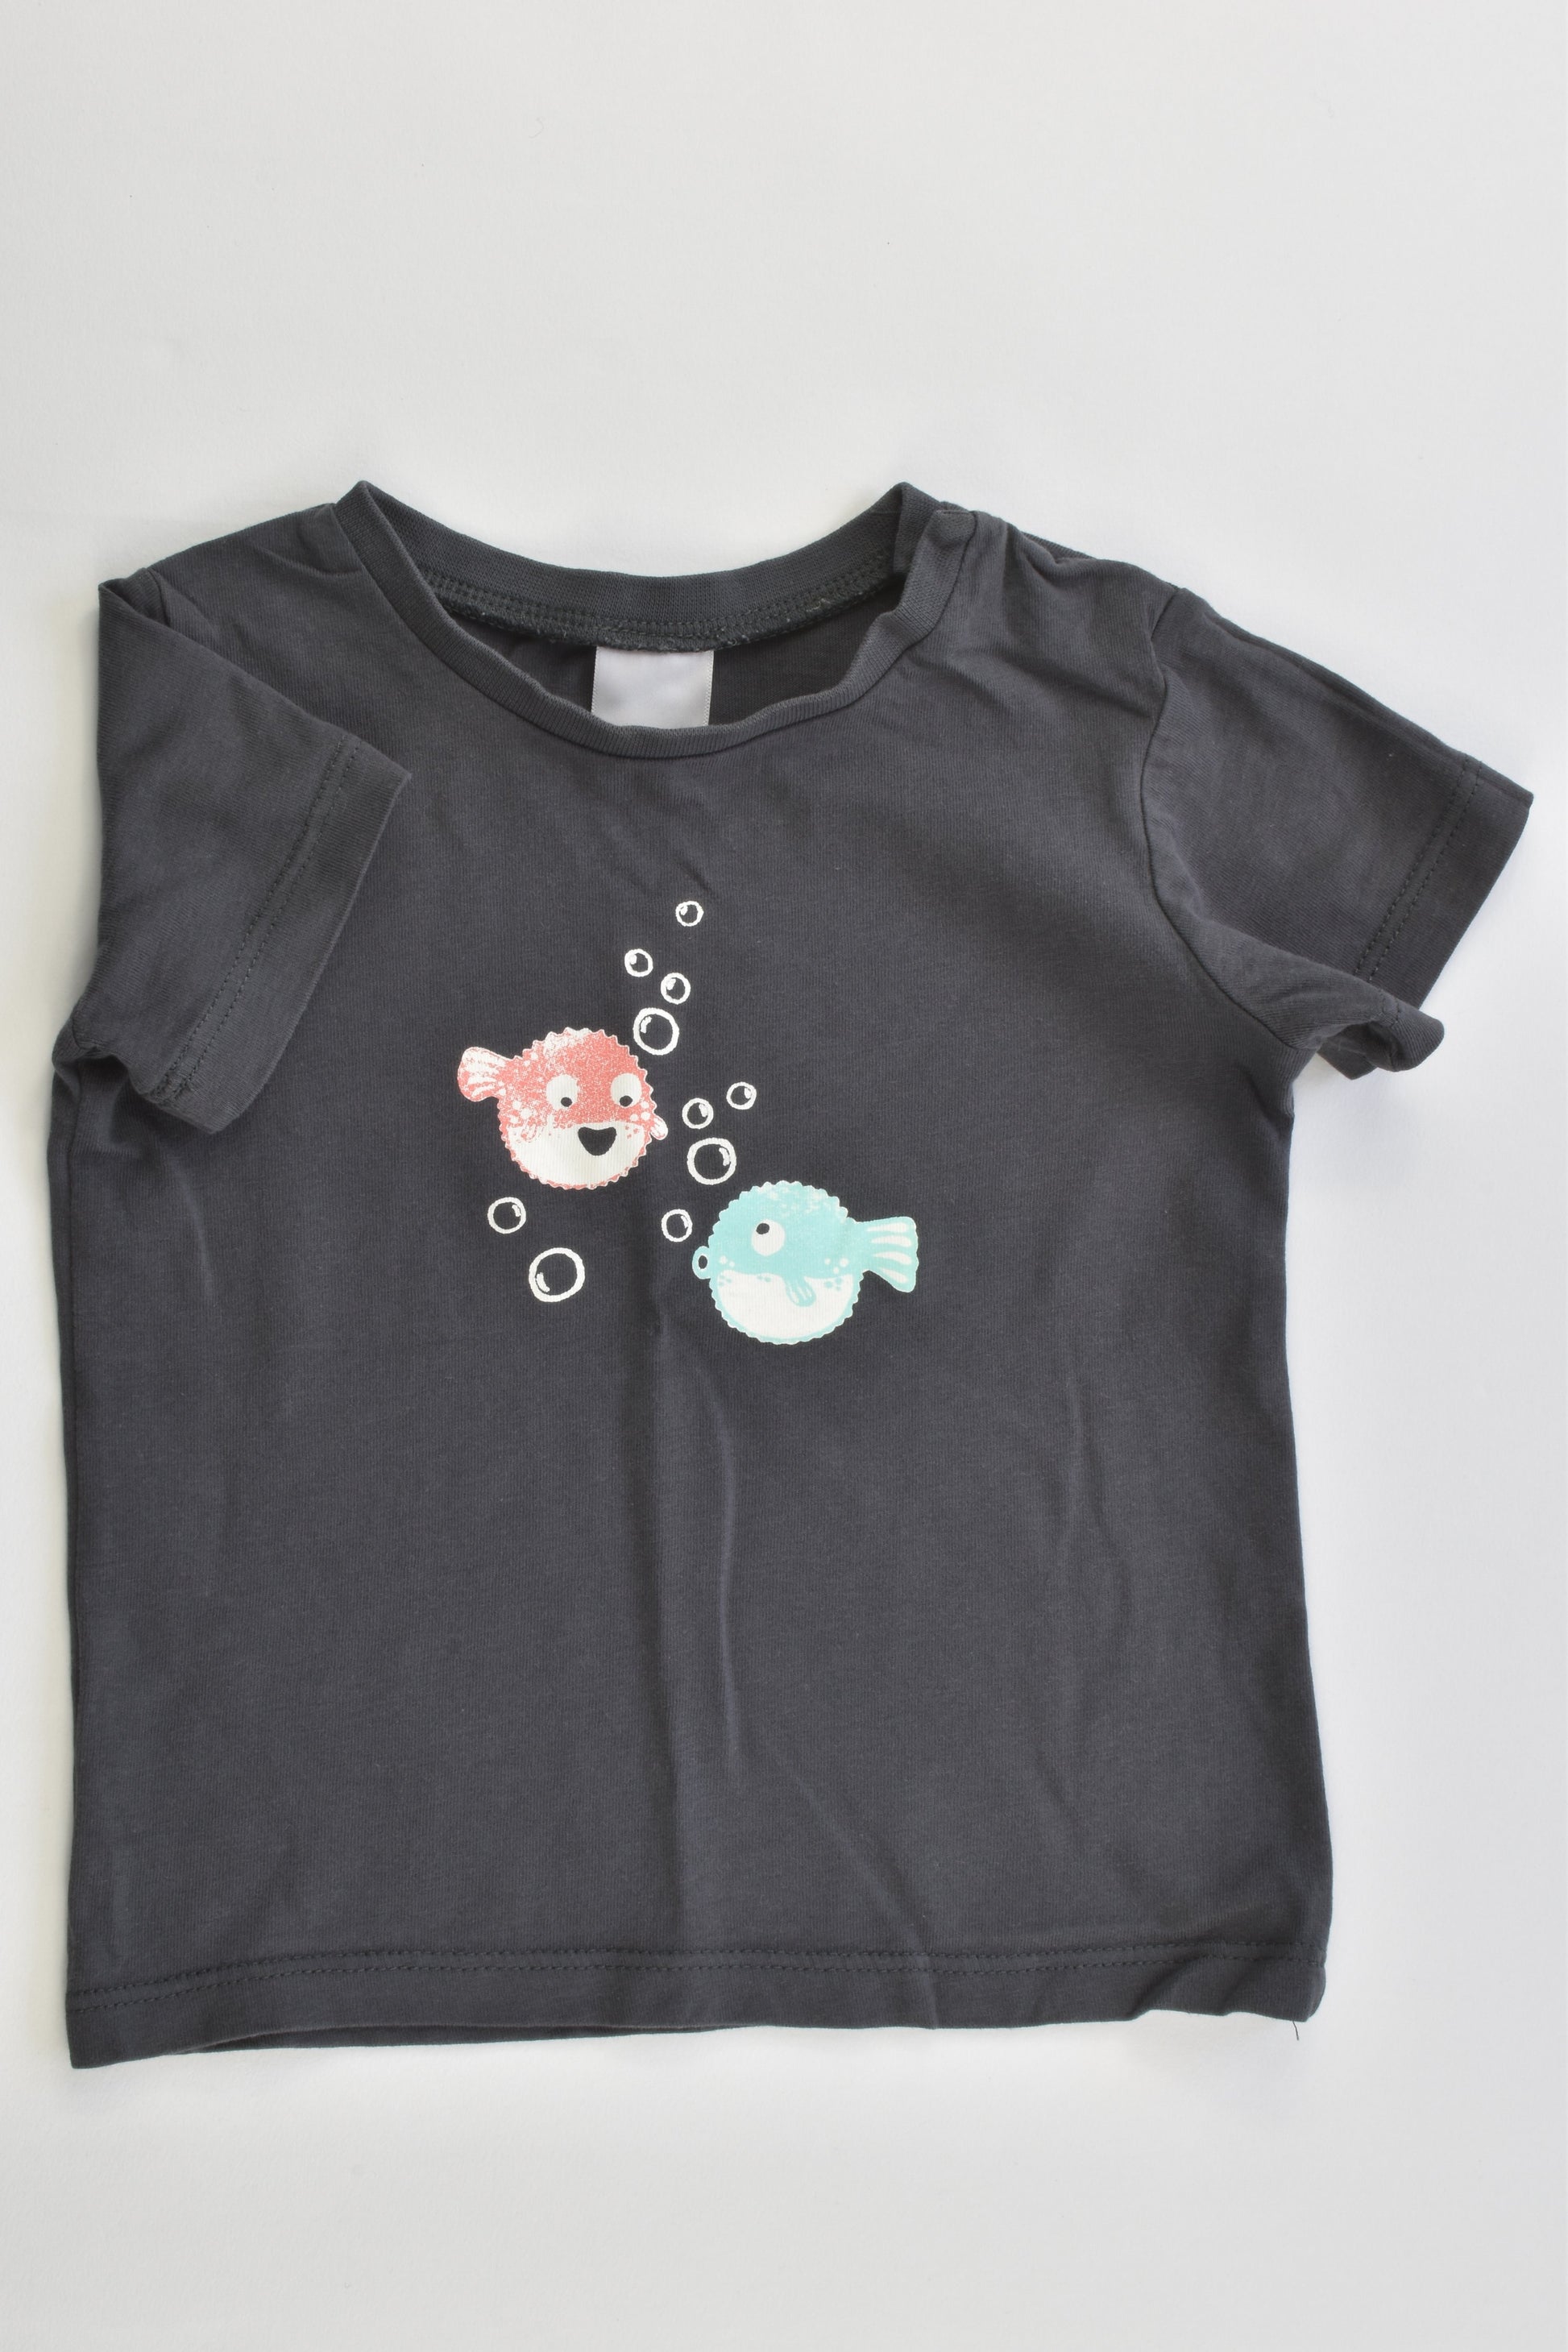 Target Size 0 (6-12 months) Pufferfish T-shirt